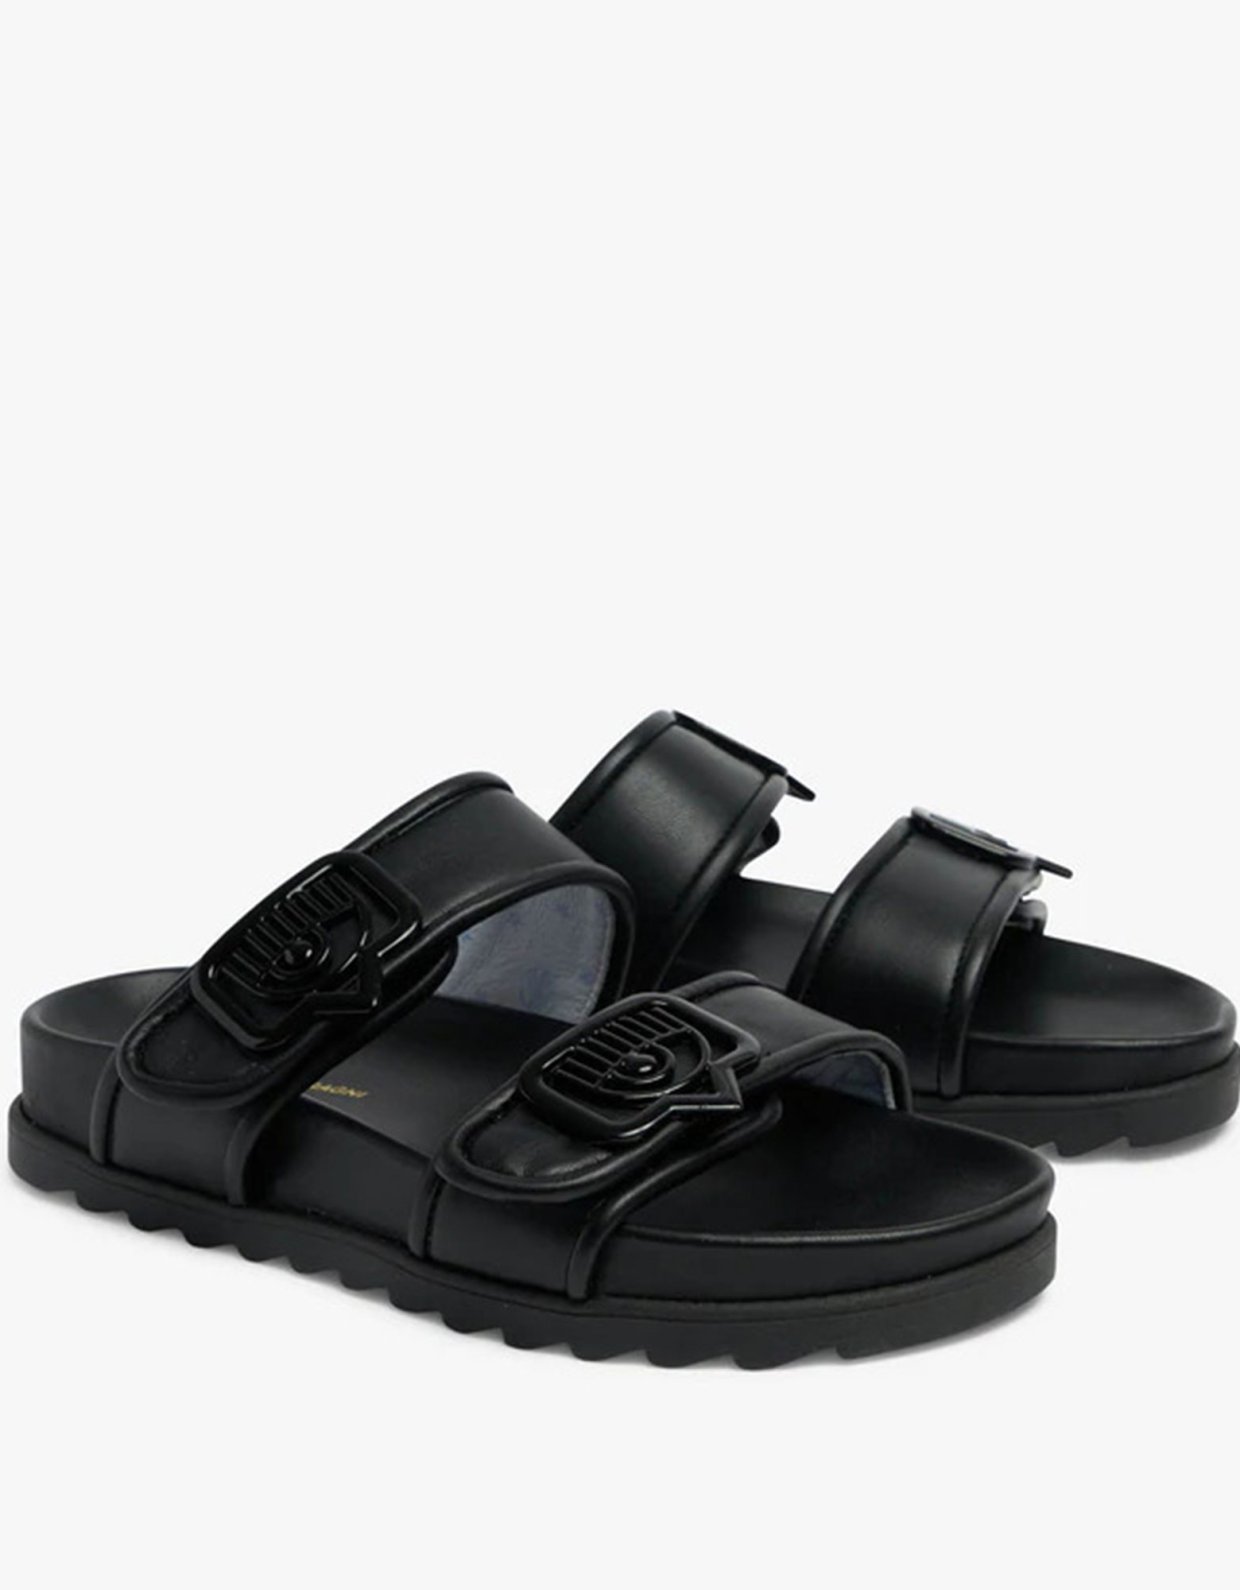 Chiara Ferragni Double strap sandal black